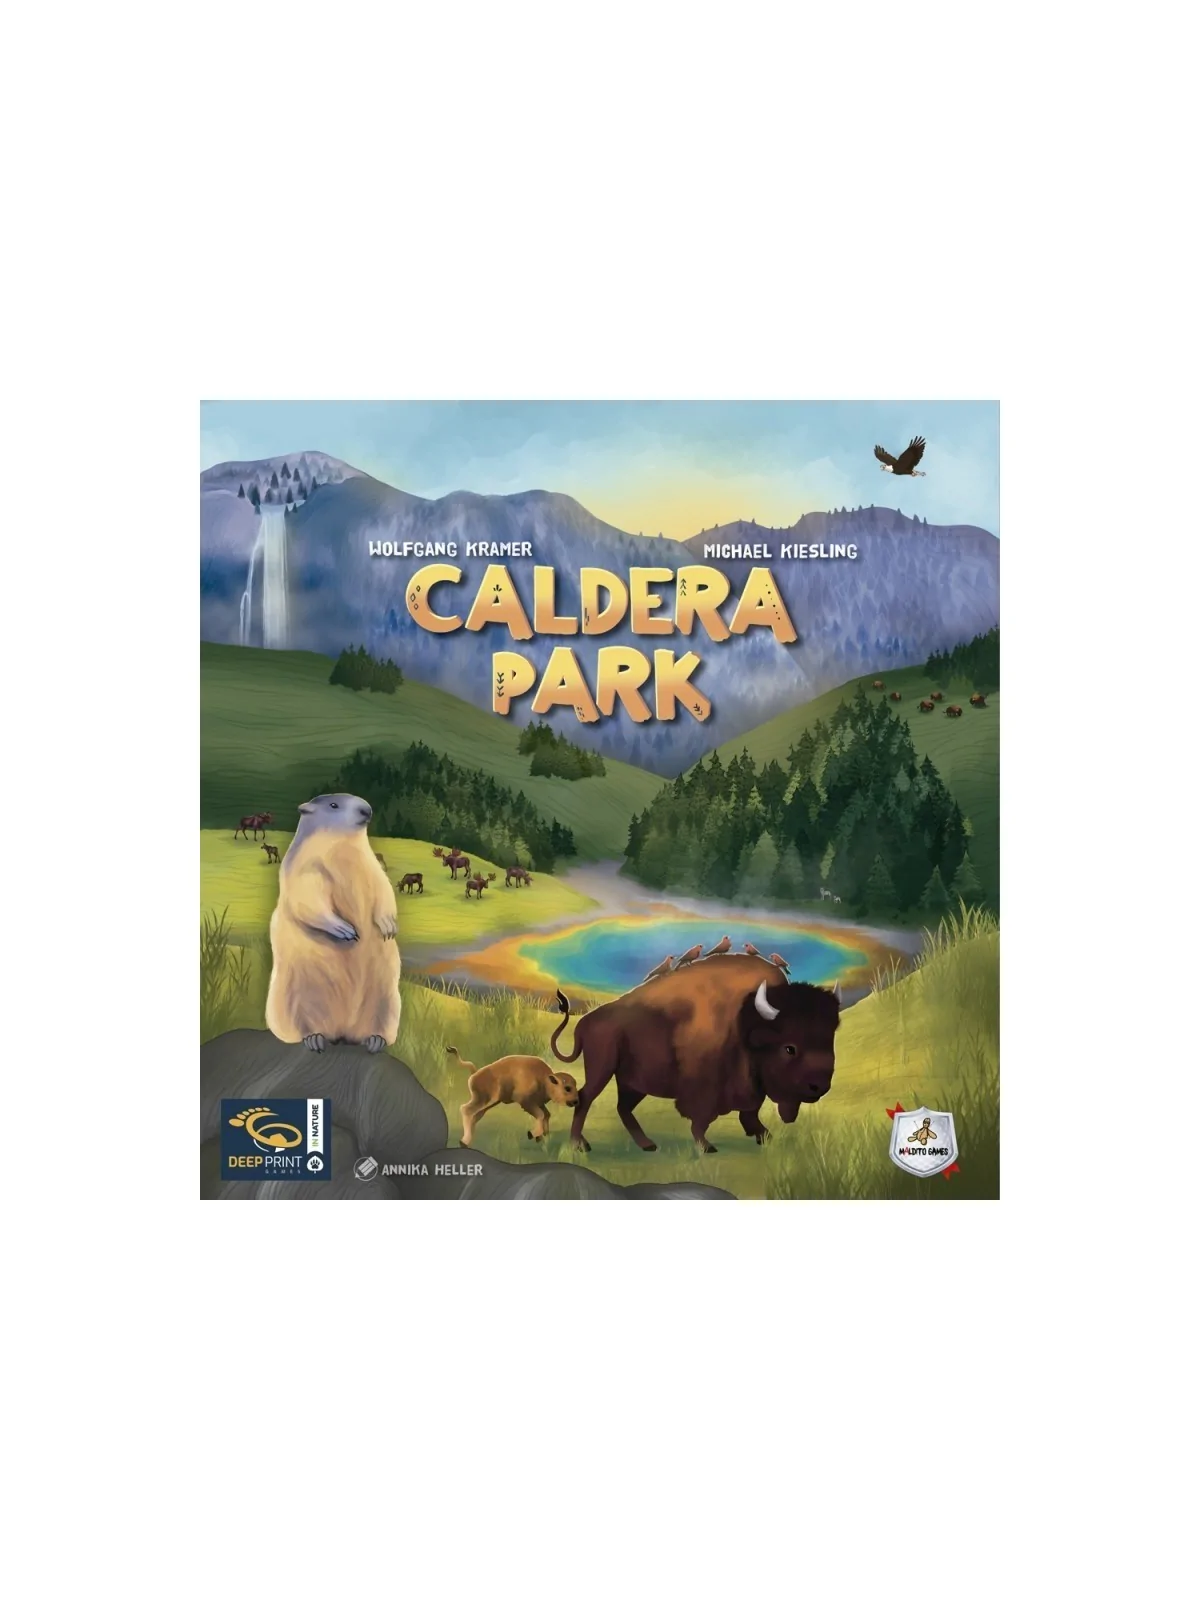 Comprar Caldera Park barato al mejor precio 31,50 € de Maldito Games